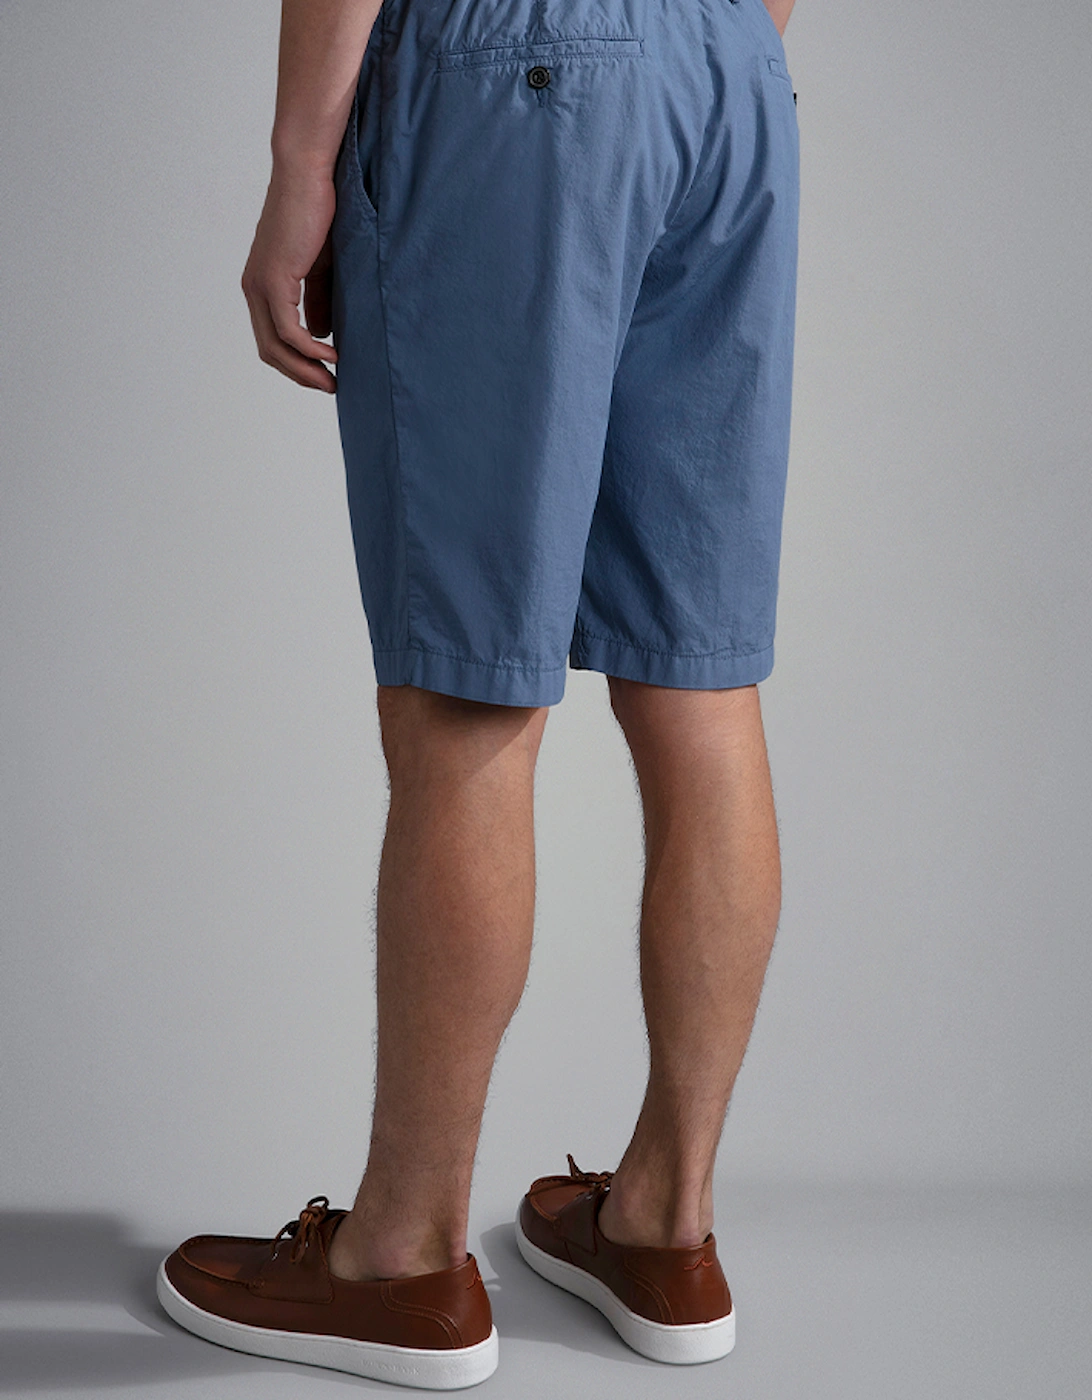 Men's Ultra-Light Poplin Cotton Bermuda Shorts